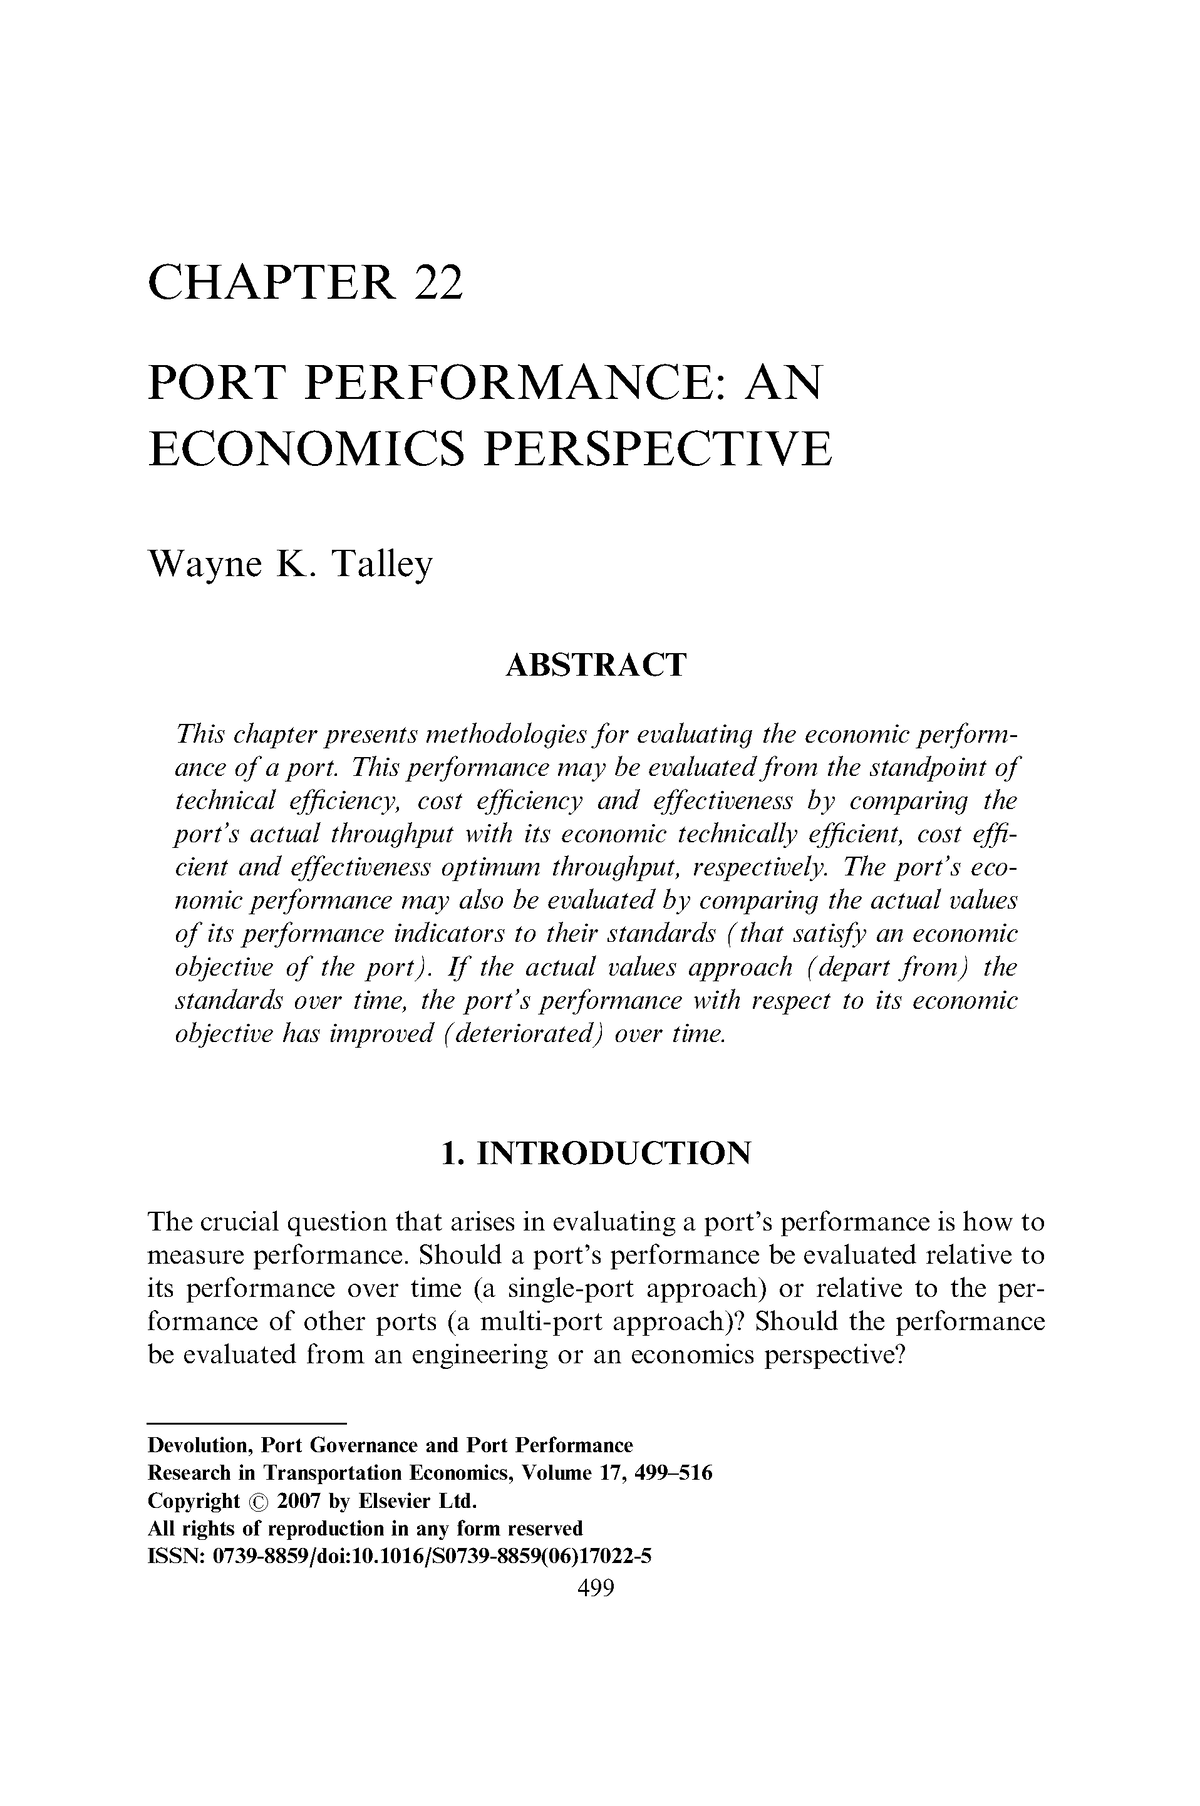 essays on port economics